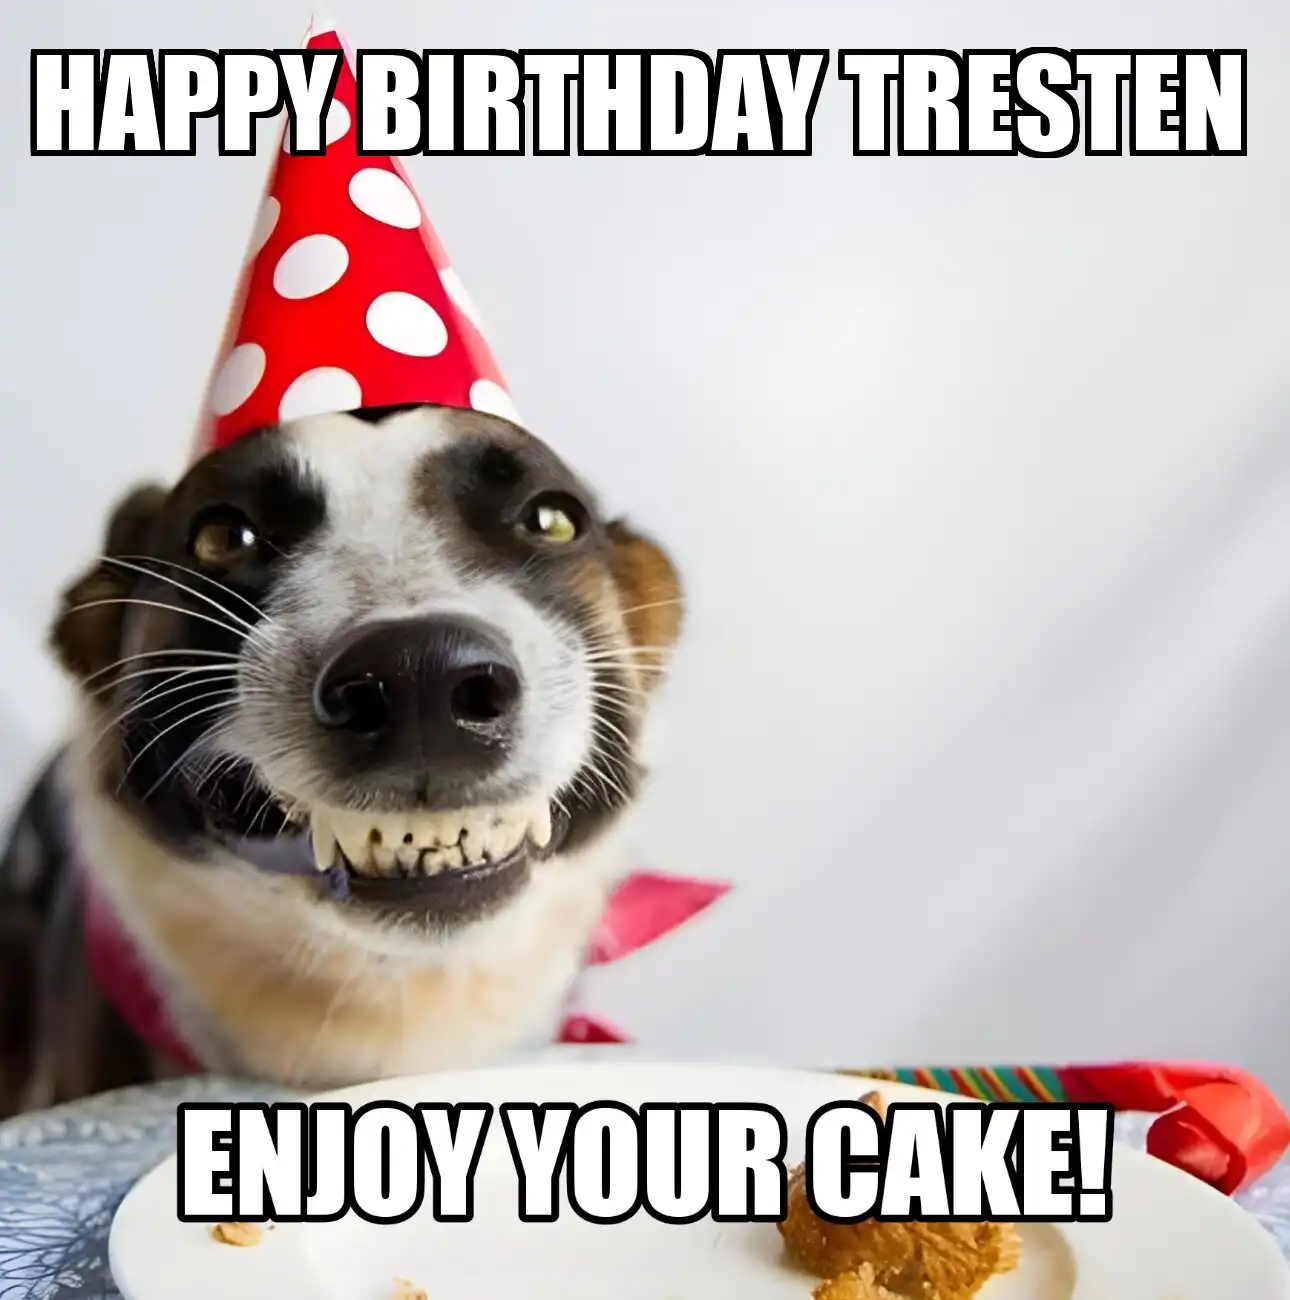 Happy Birthday Tresten Enjoy Your Cake Dog Meme